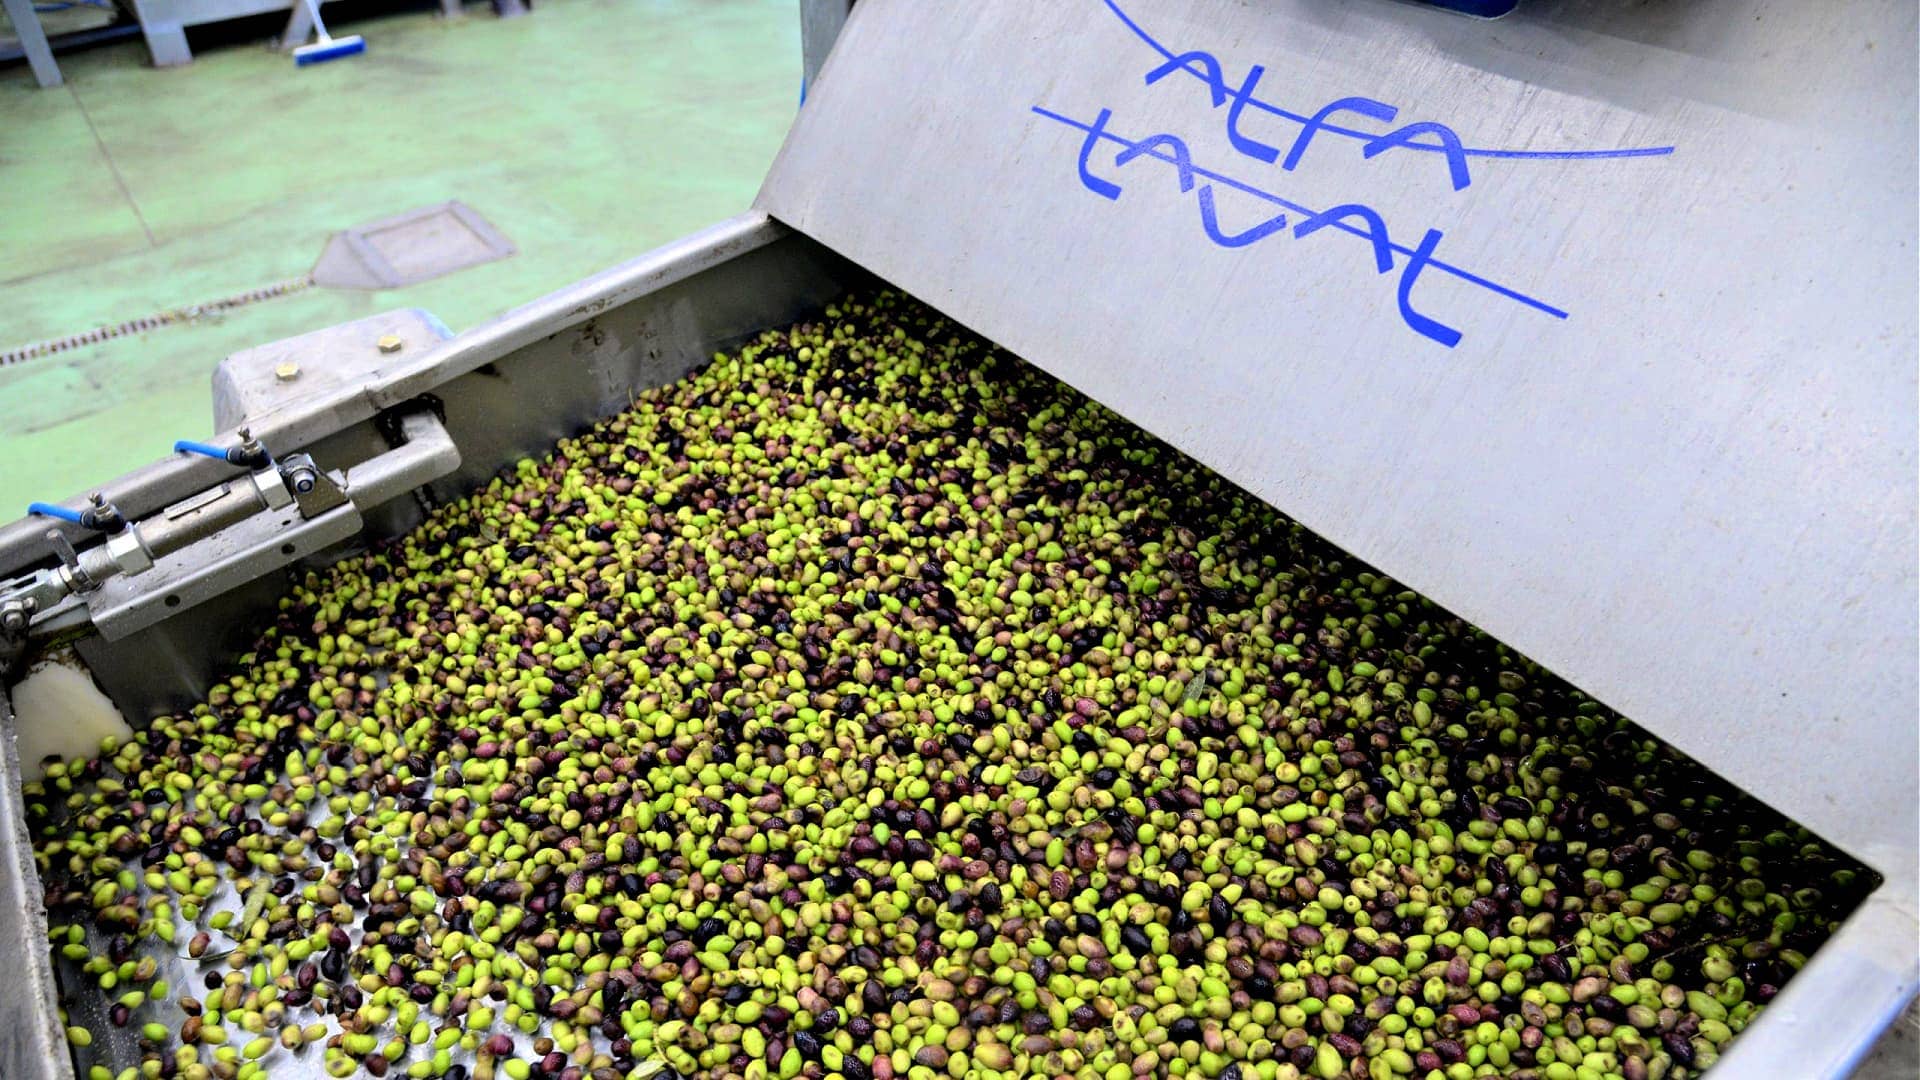 профили-лучшее-производство-оливкового-масла-кризис-стимул-спартанское-оливковое-масло-выковать-яркое-будущее-оливковое-масло-времена